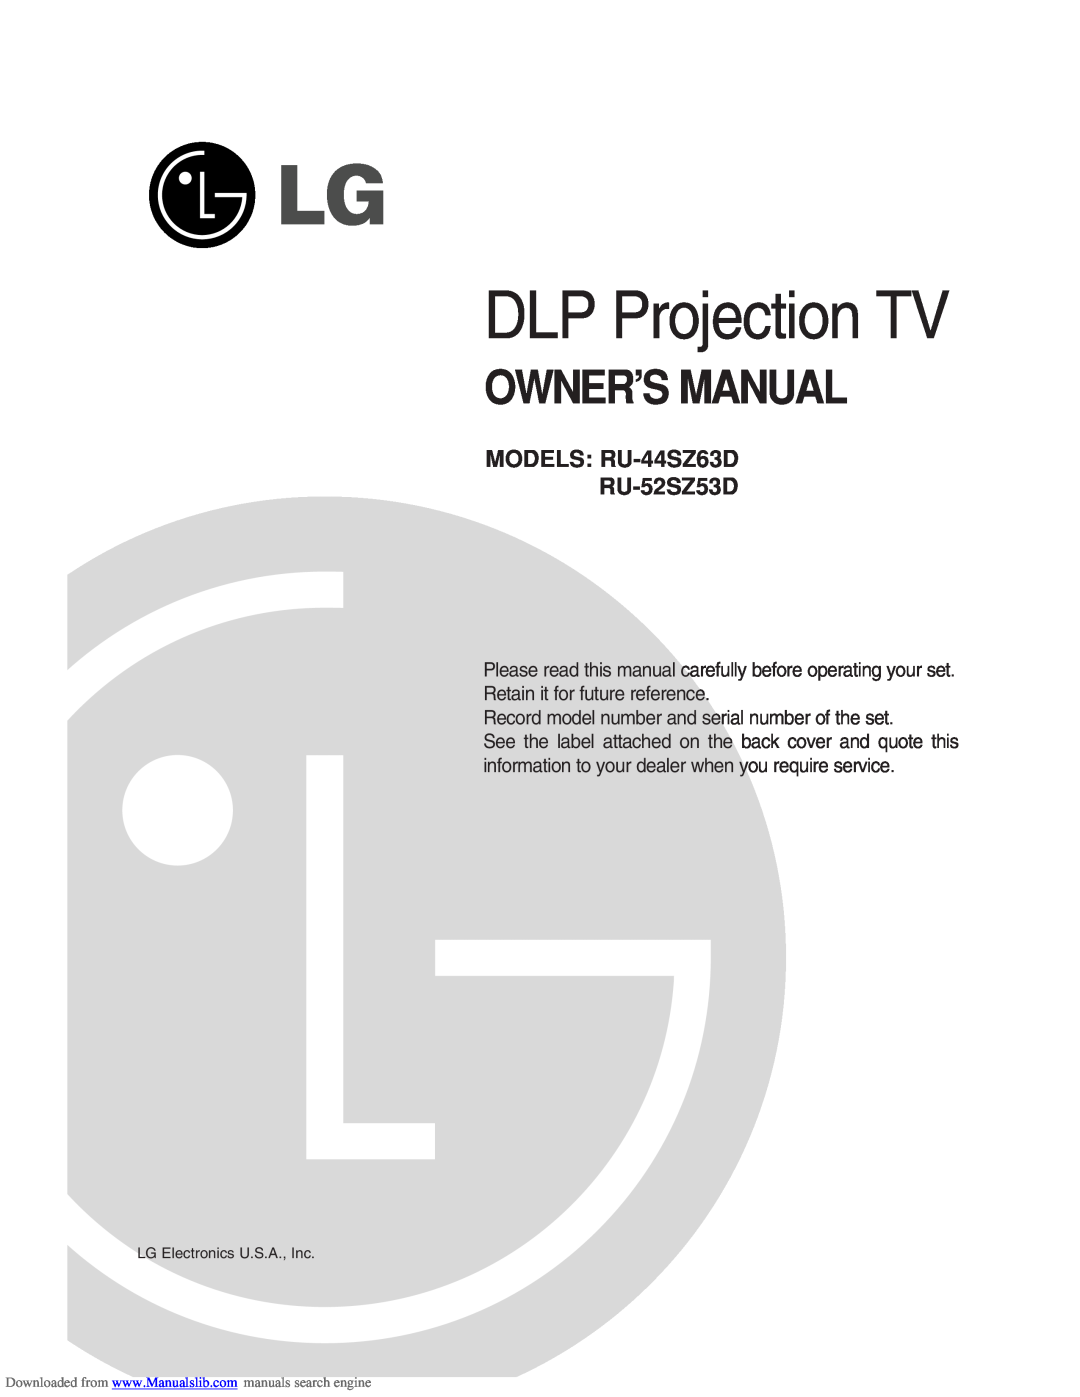 LG Electronics owner manual DLP Projection TV, Owner’S Manual, MODELS RU-44SZ63D RU-52SZ53D 